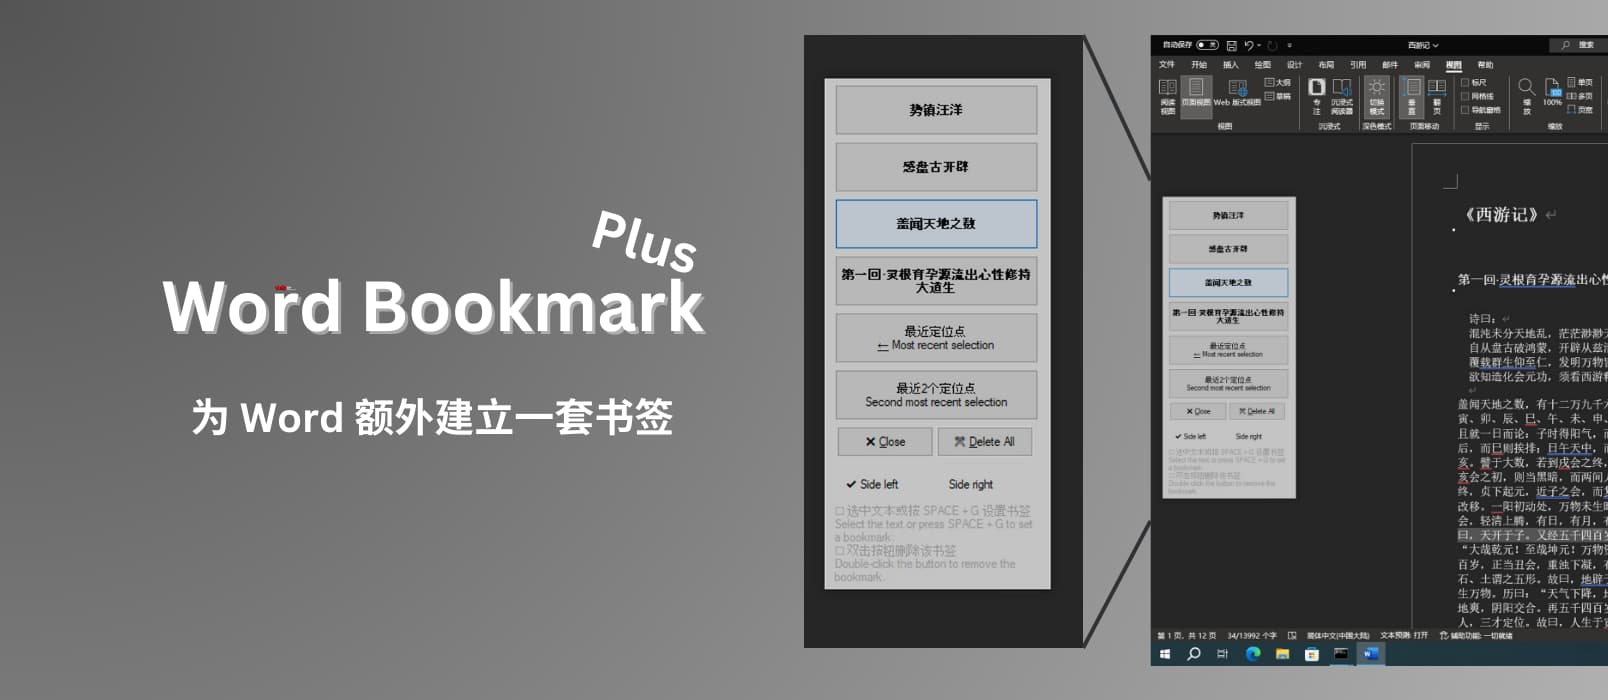 Word Bookmark Plus - 为 Word 额外建立书签，在文档内快速跳转[Windows] 14